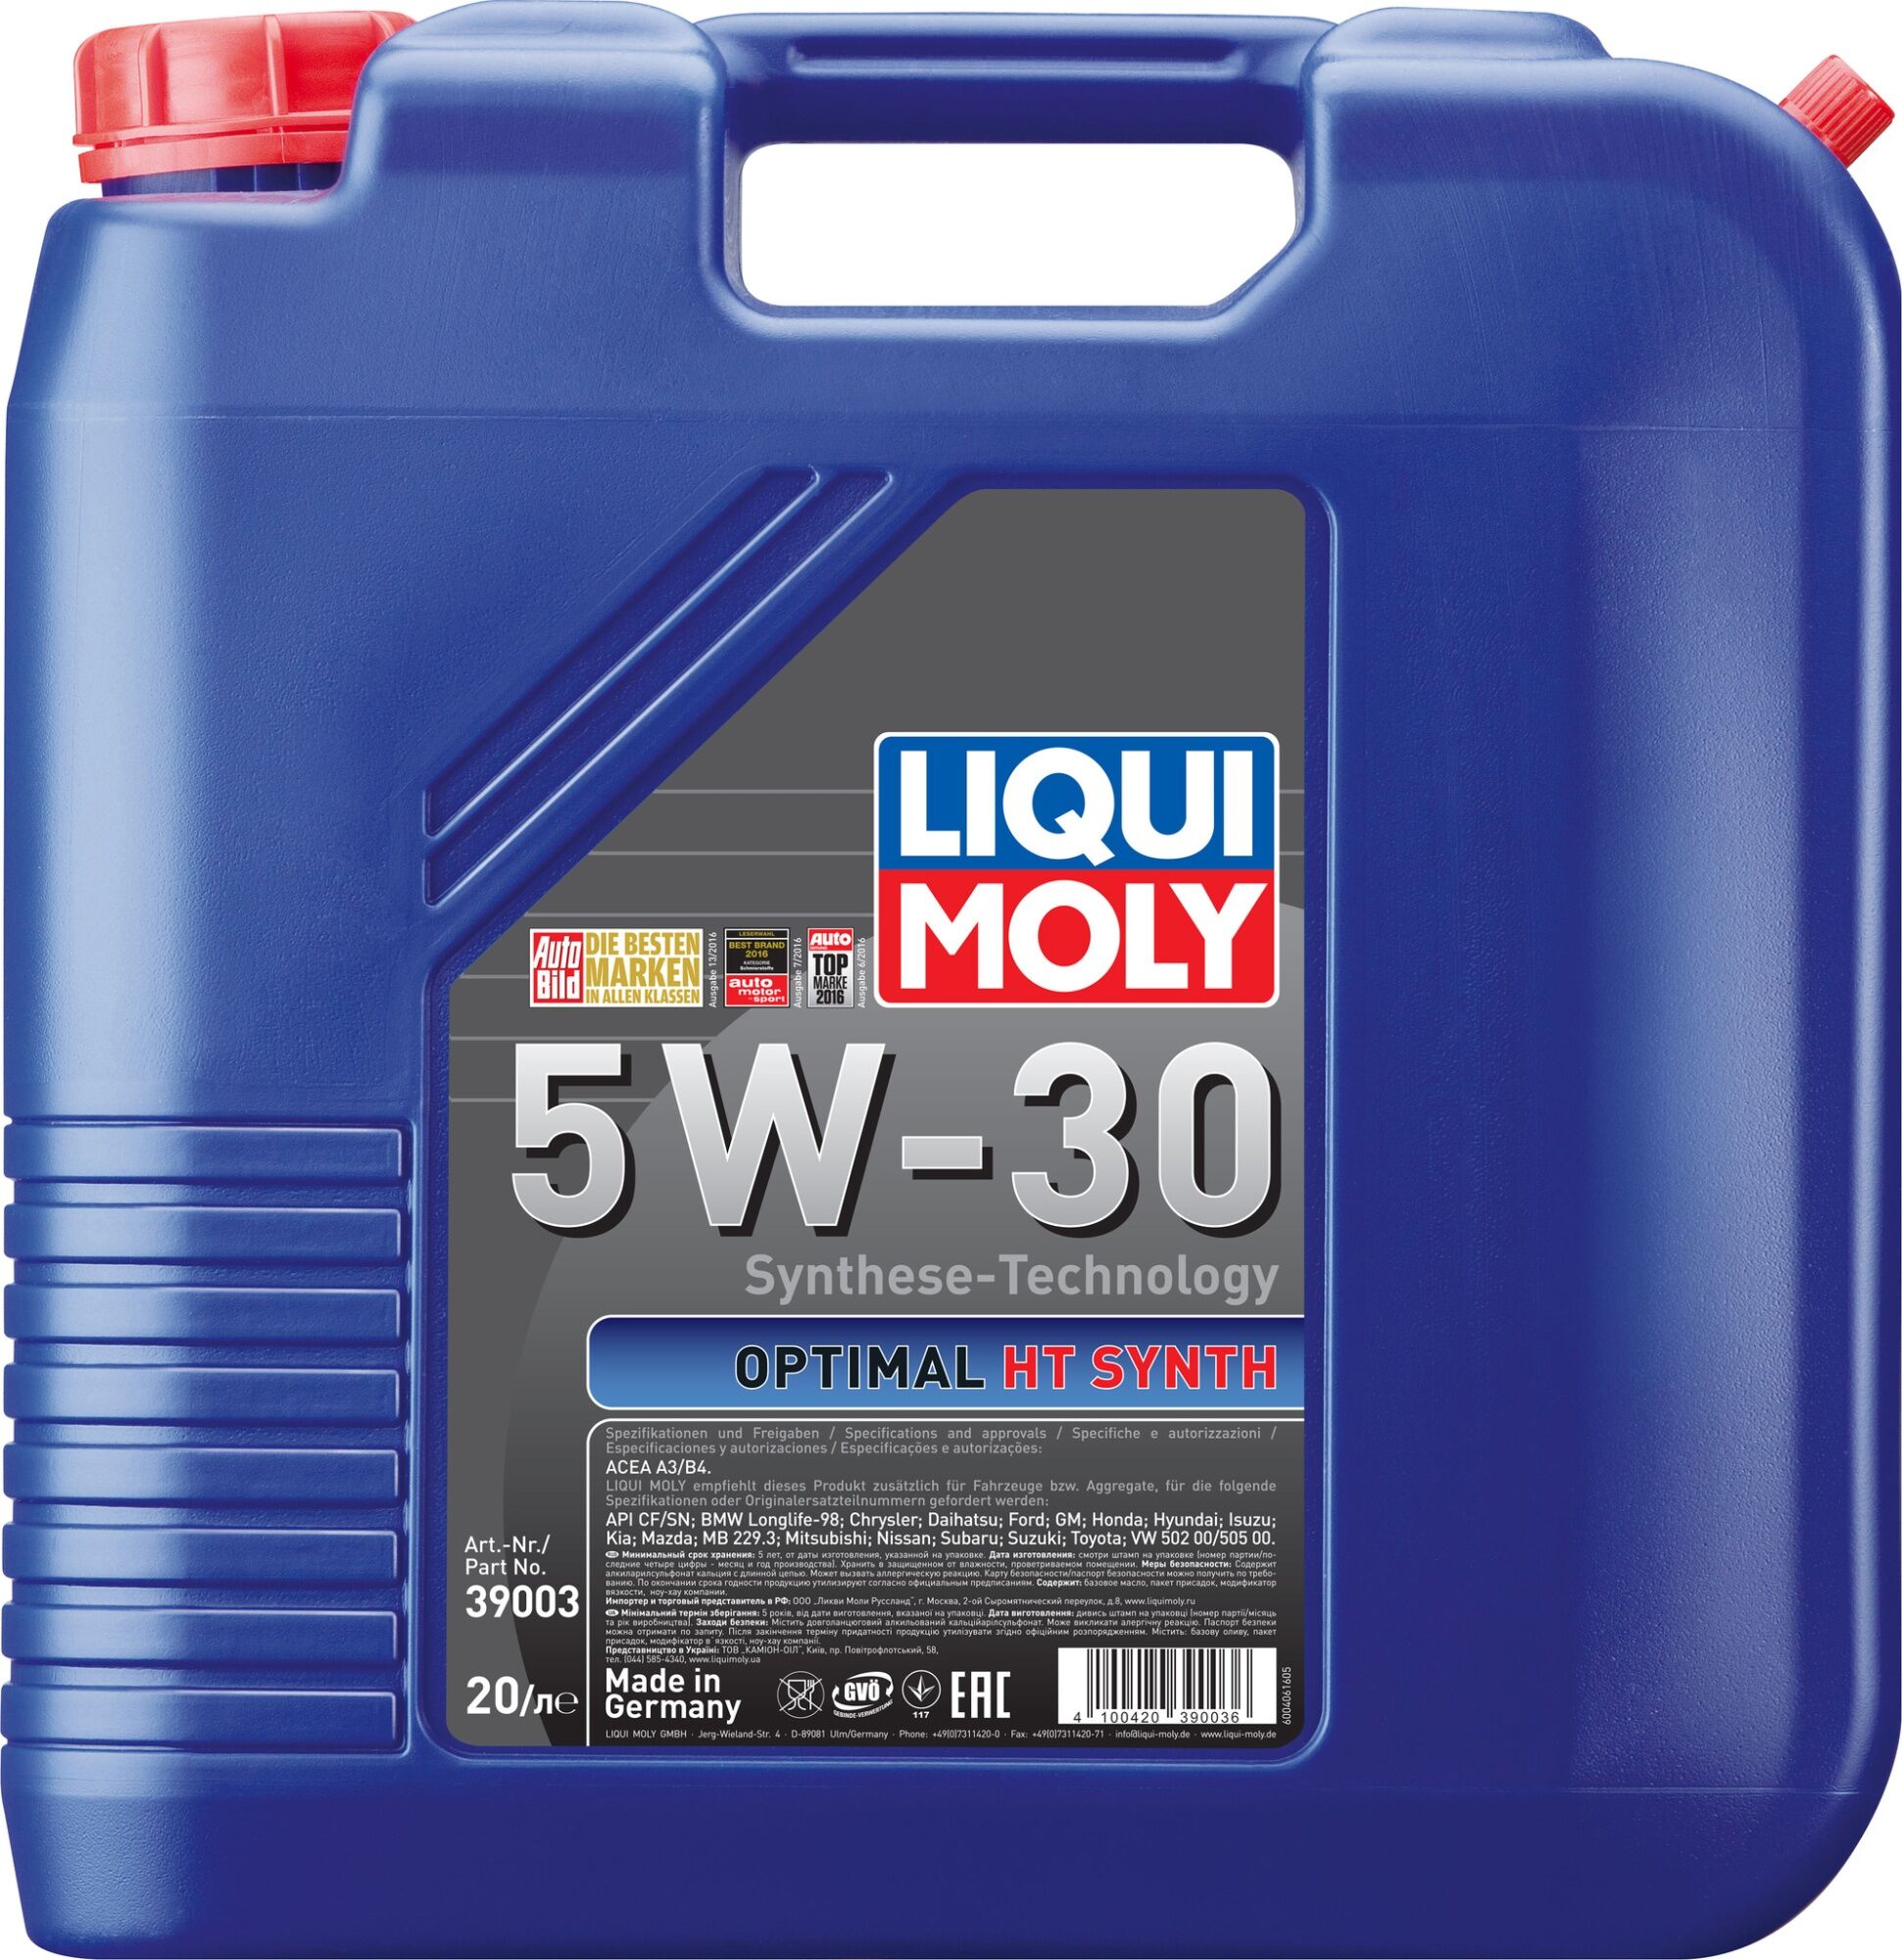 Моторное масло LIQUI MOLY Optimal HT Synth 5W-30 синтетическое 20л (39003)